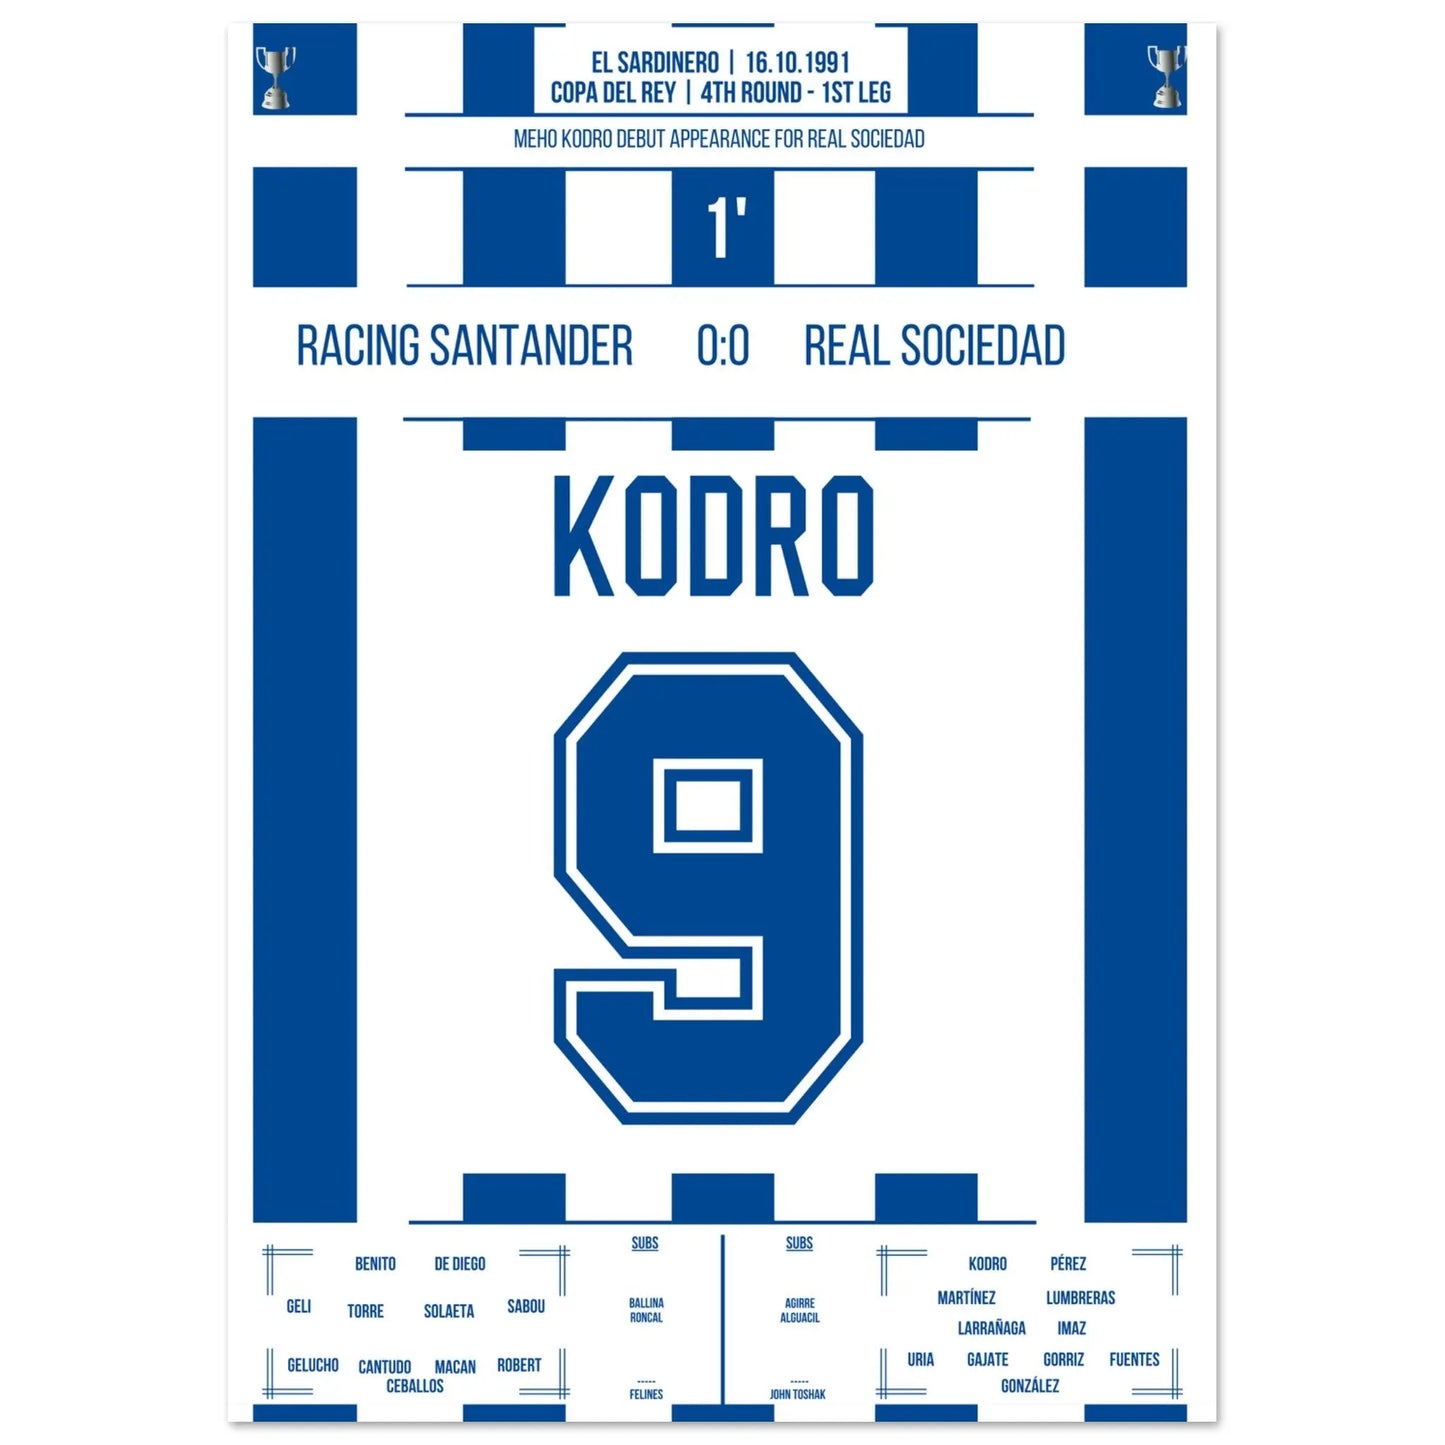 Meho Kodro fait ses débuts avec la Real Sociedad